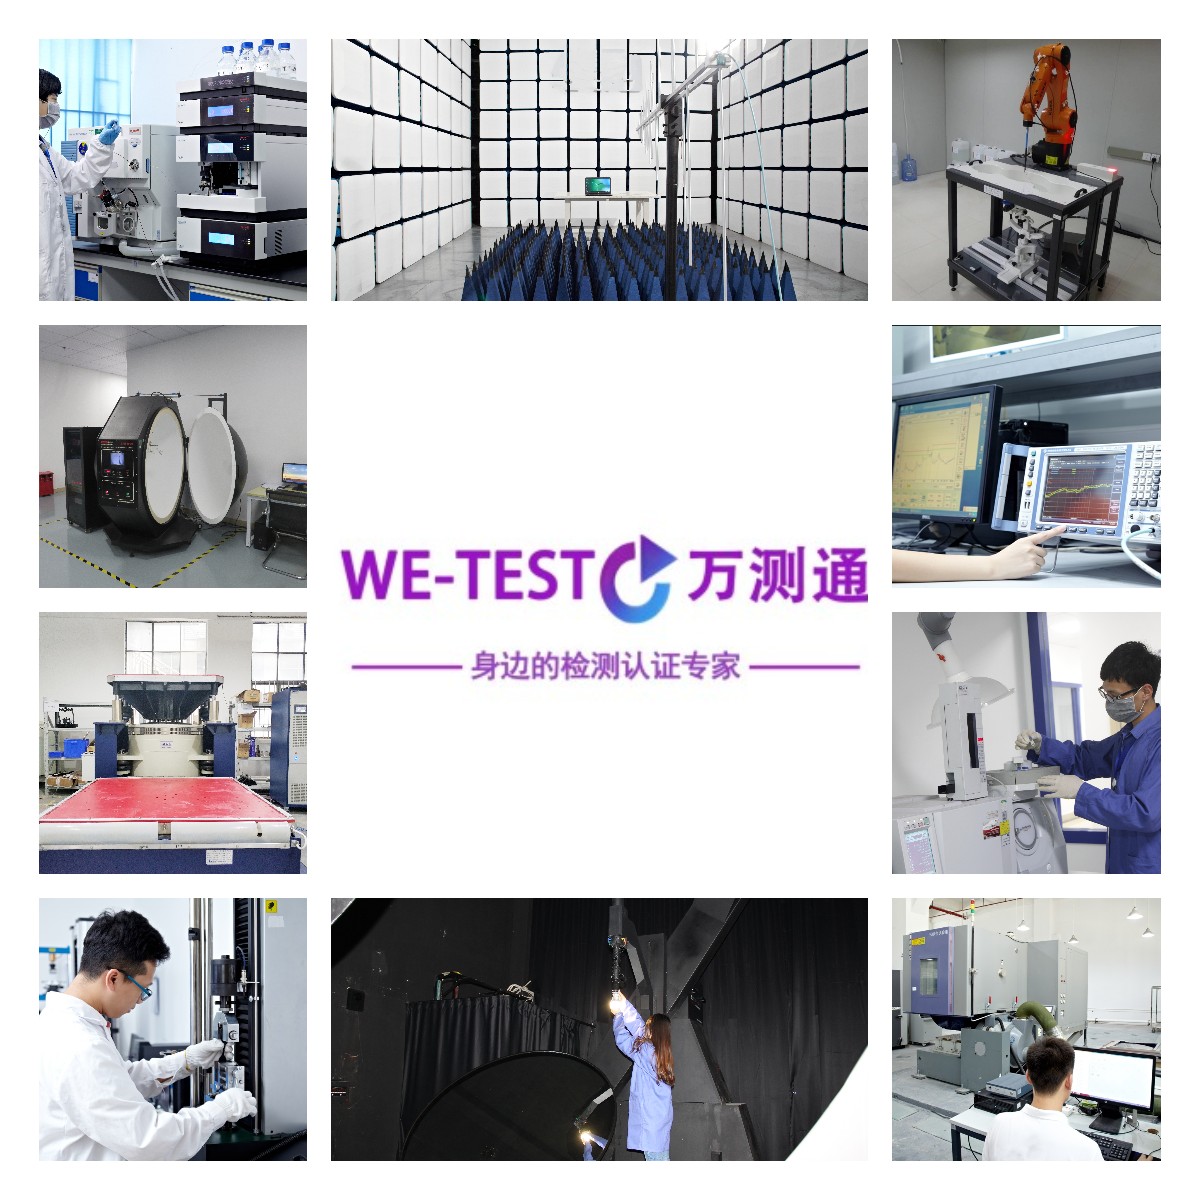 昌江黎族自治县单项测试电池认证 厦门电池认证检测公司 电池